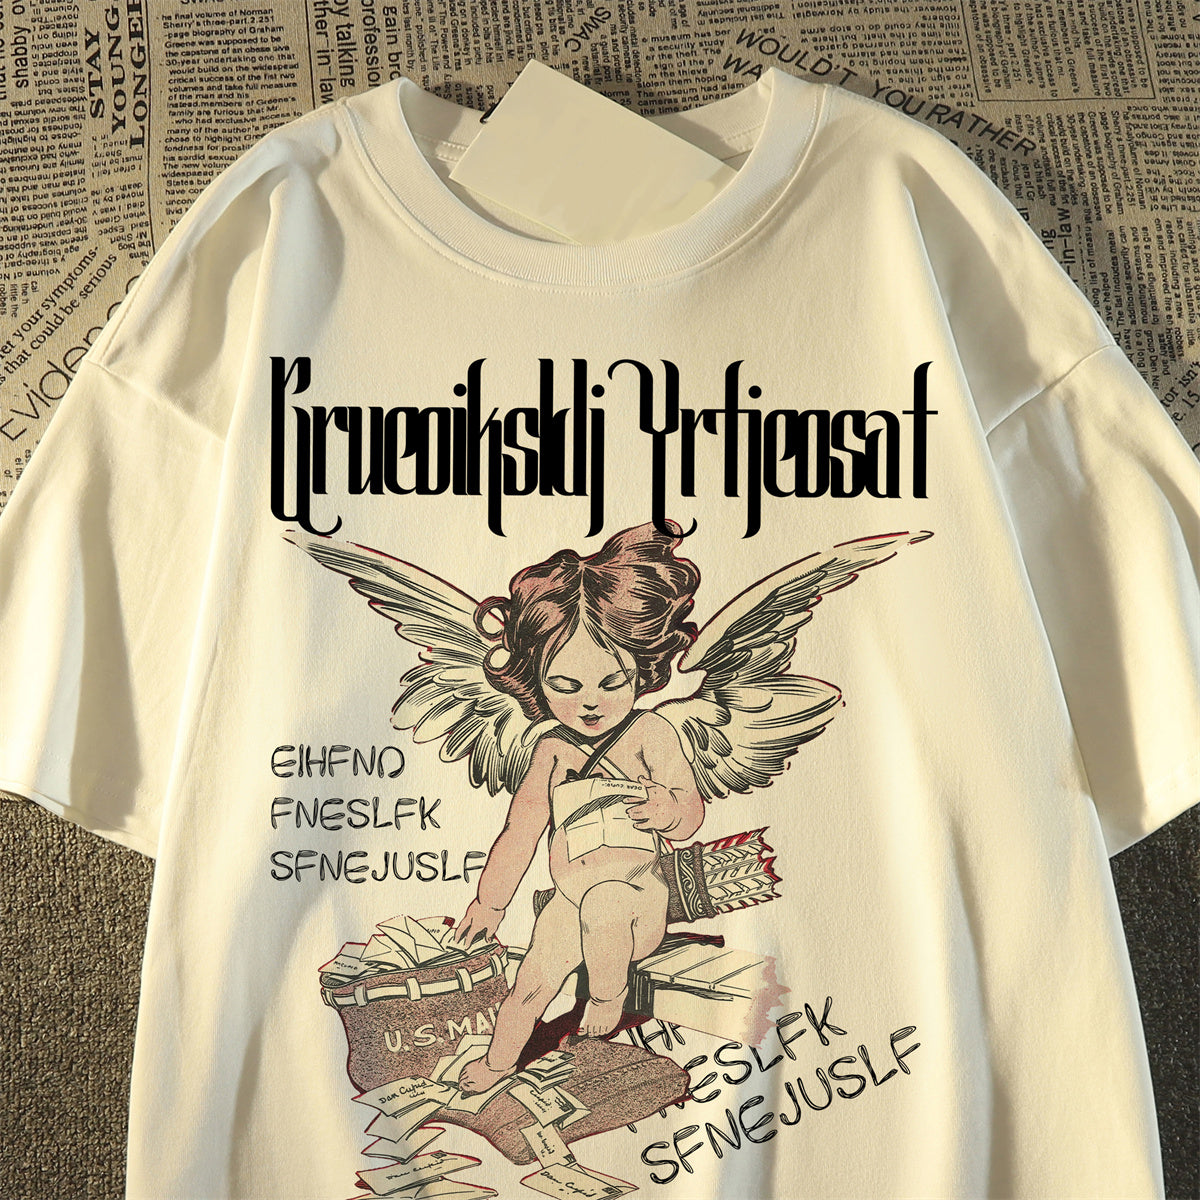 Unisex Retro little angel print round neck cotton T-shirt